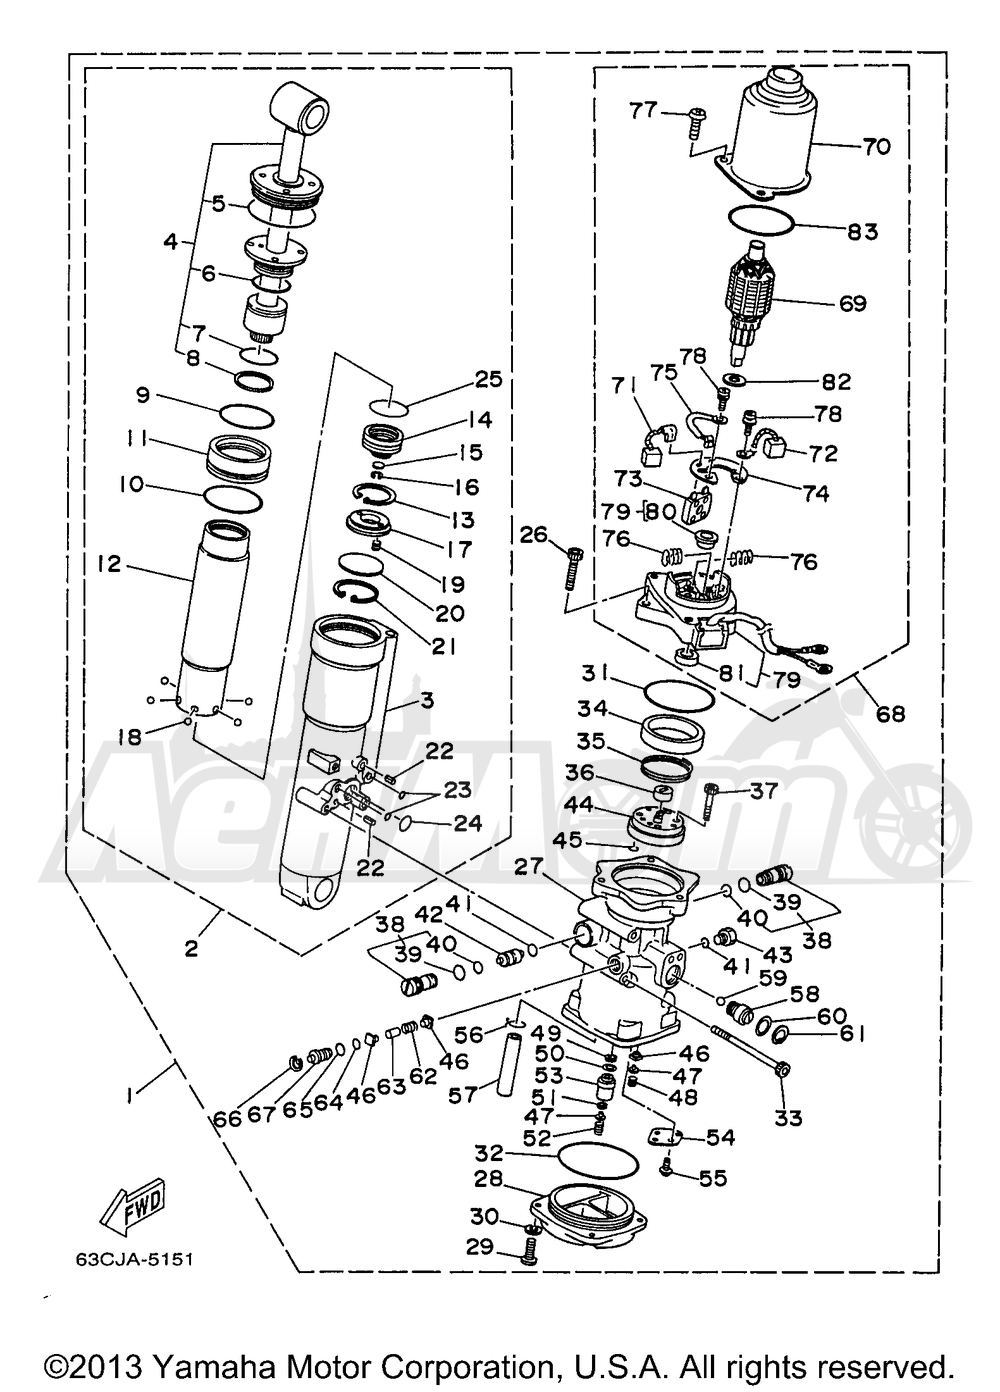 Запчасти для Лодочного мотора Yamaha 1997 C40TLRV Раздел: POWER TRIM & TILT ASSEMBLY 1 | мощность обшивка, оболочка & наклон в сборе 1